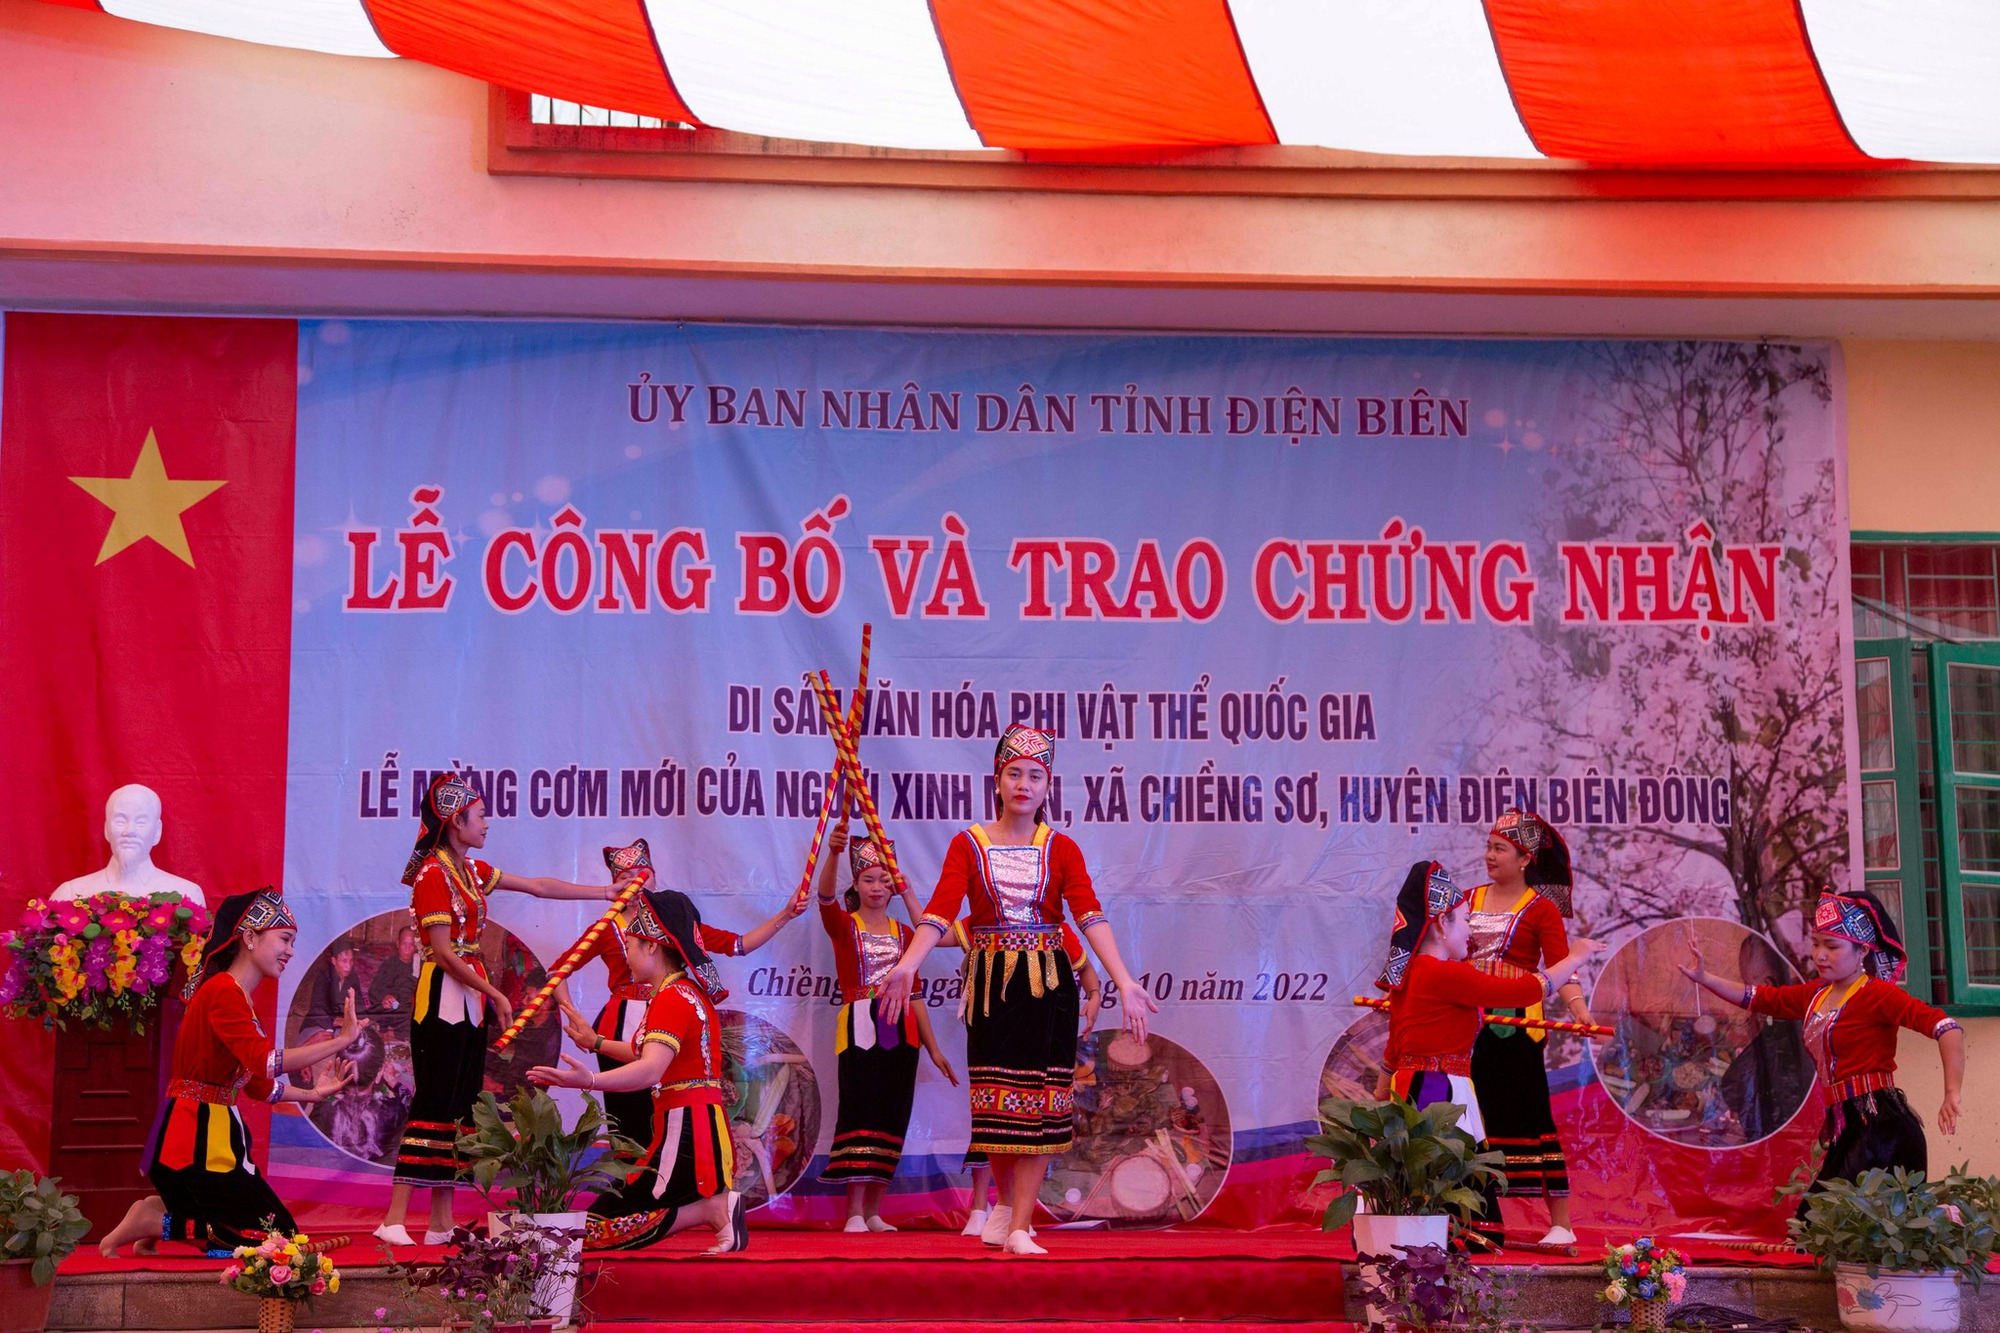  Điện Biên: Lễ Mừng cơm mới của người Xinh Mun được công nhận là di sản văn hoá phi vật quốc gia - Ảnh 1.